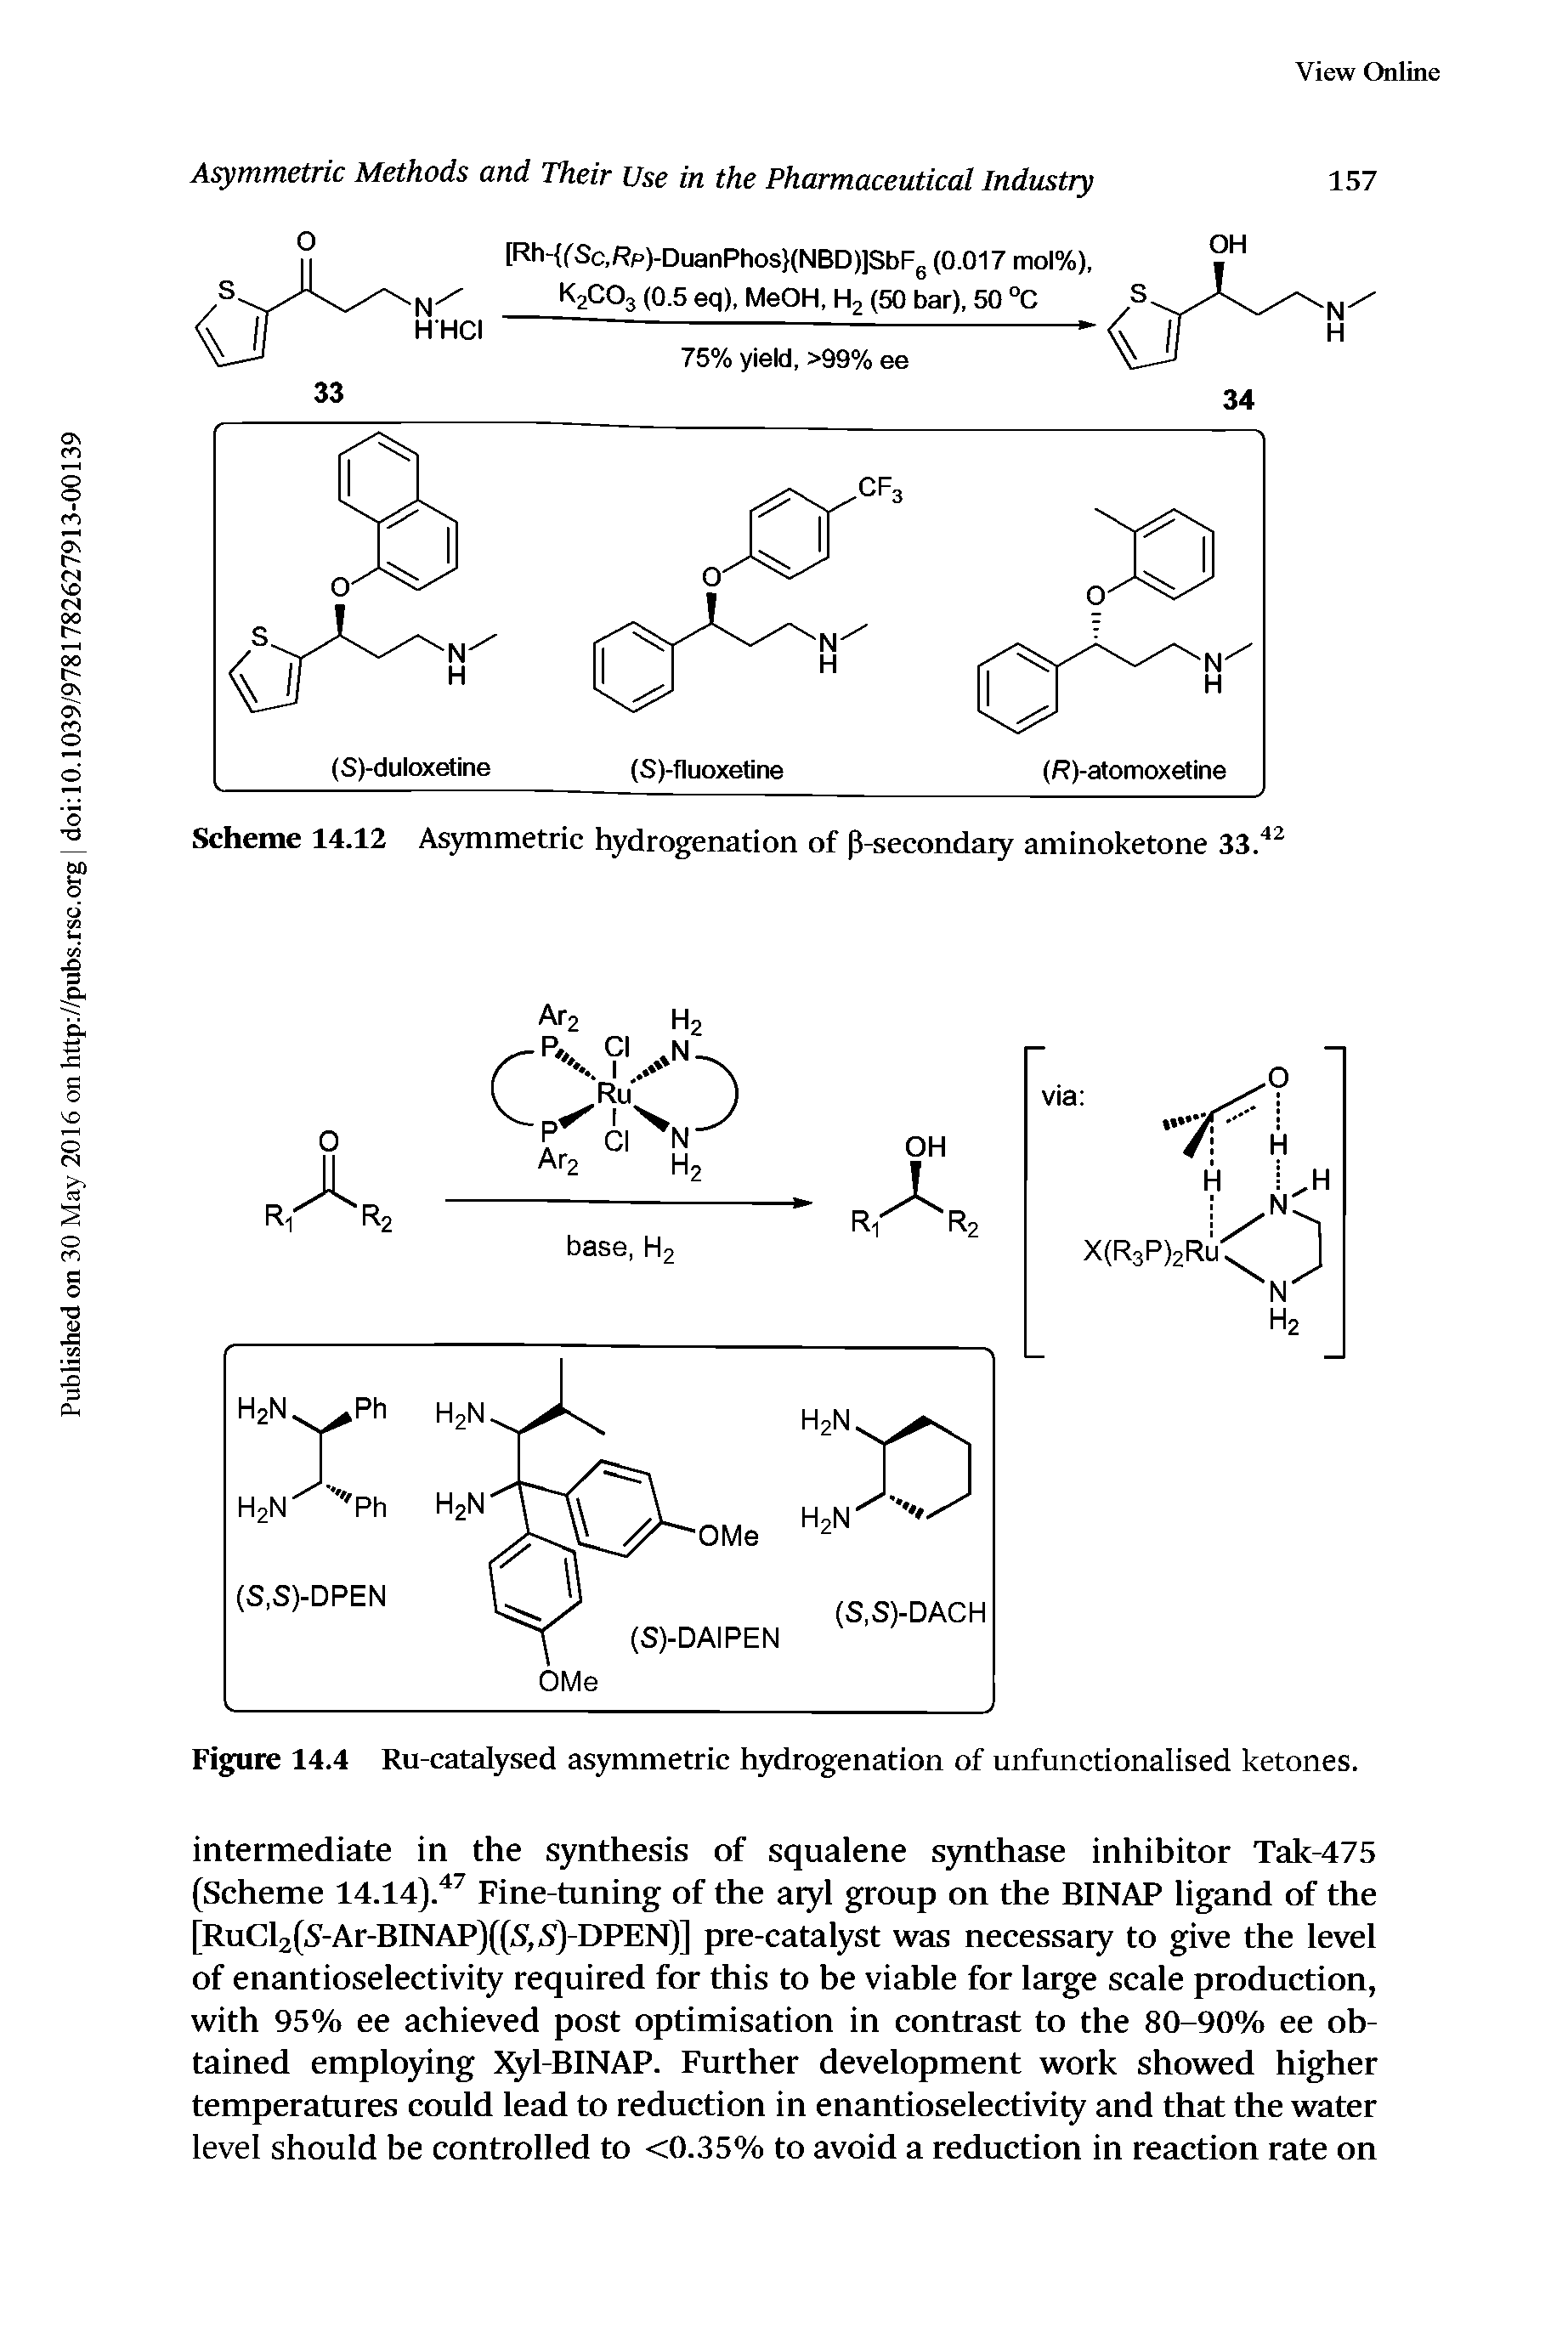 Figure 14.4 Ru-catalysed asymmetric hydrogenation of unfunctionalised ketones.